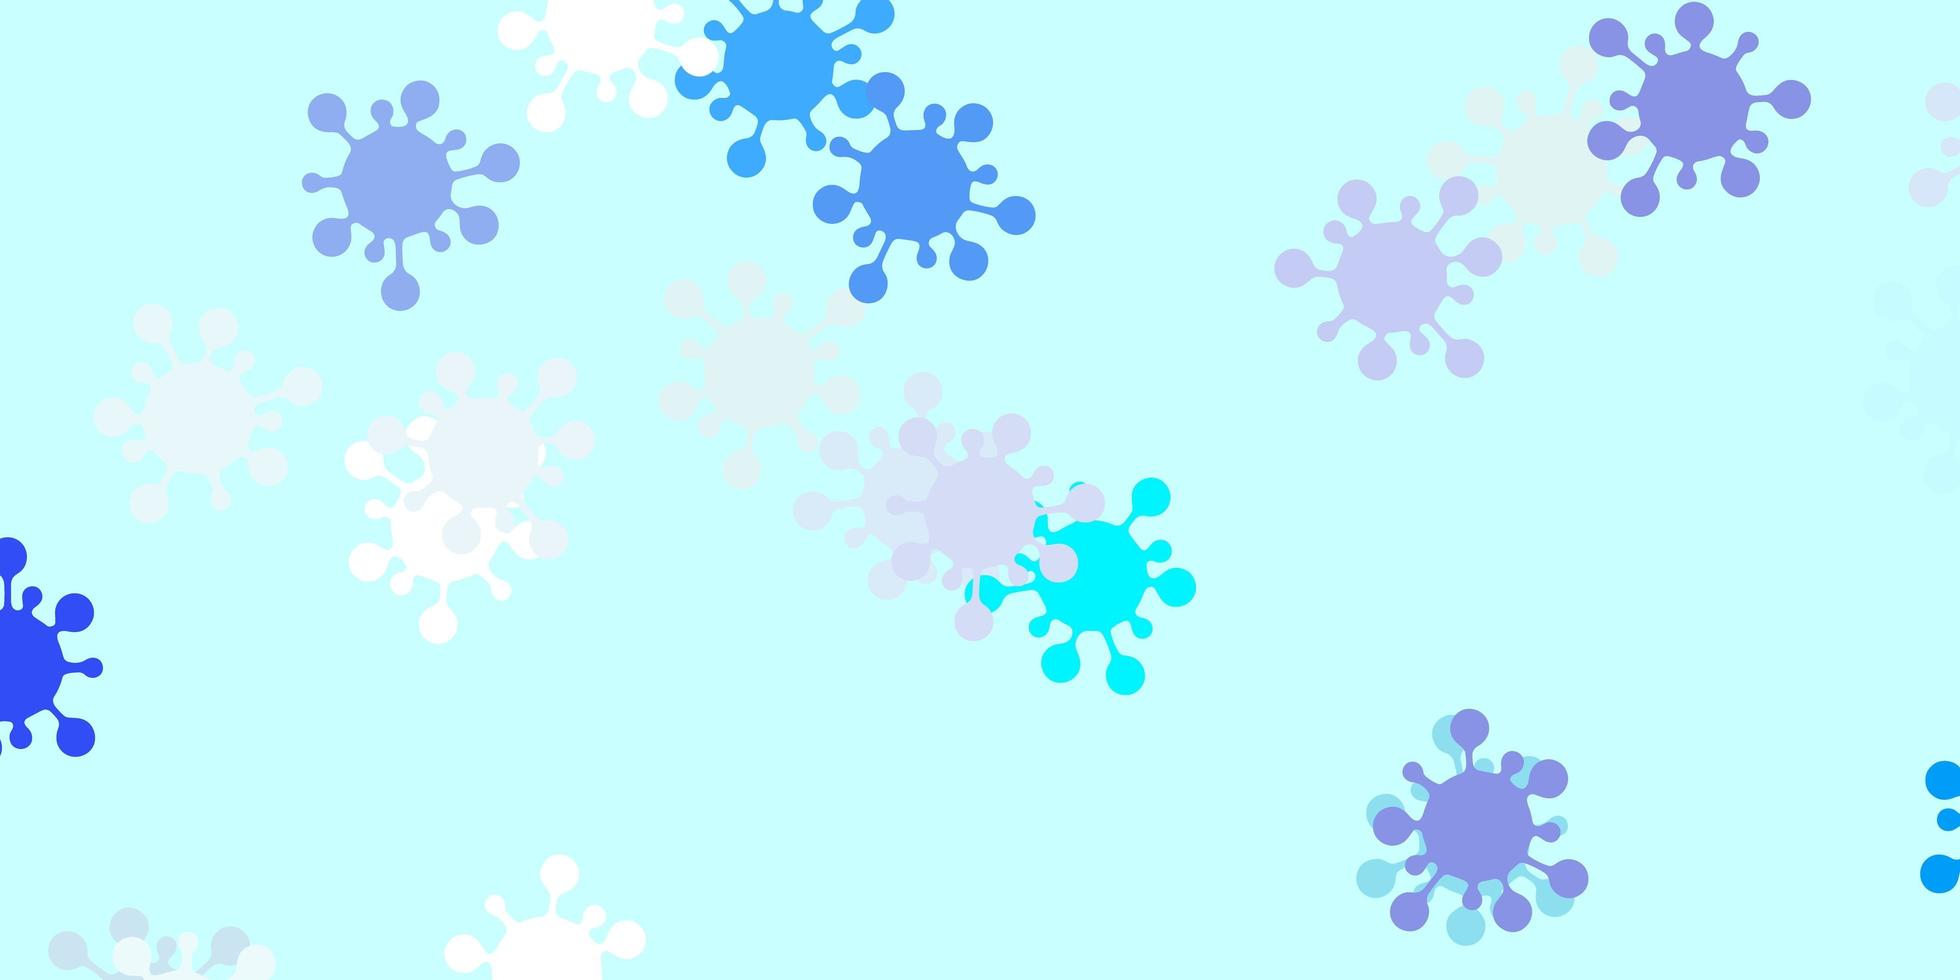 sfondo vettoriale azzurro con simboli di virus